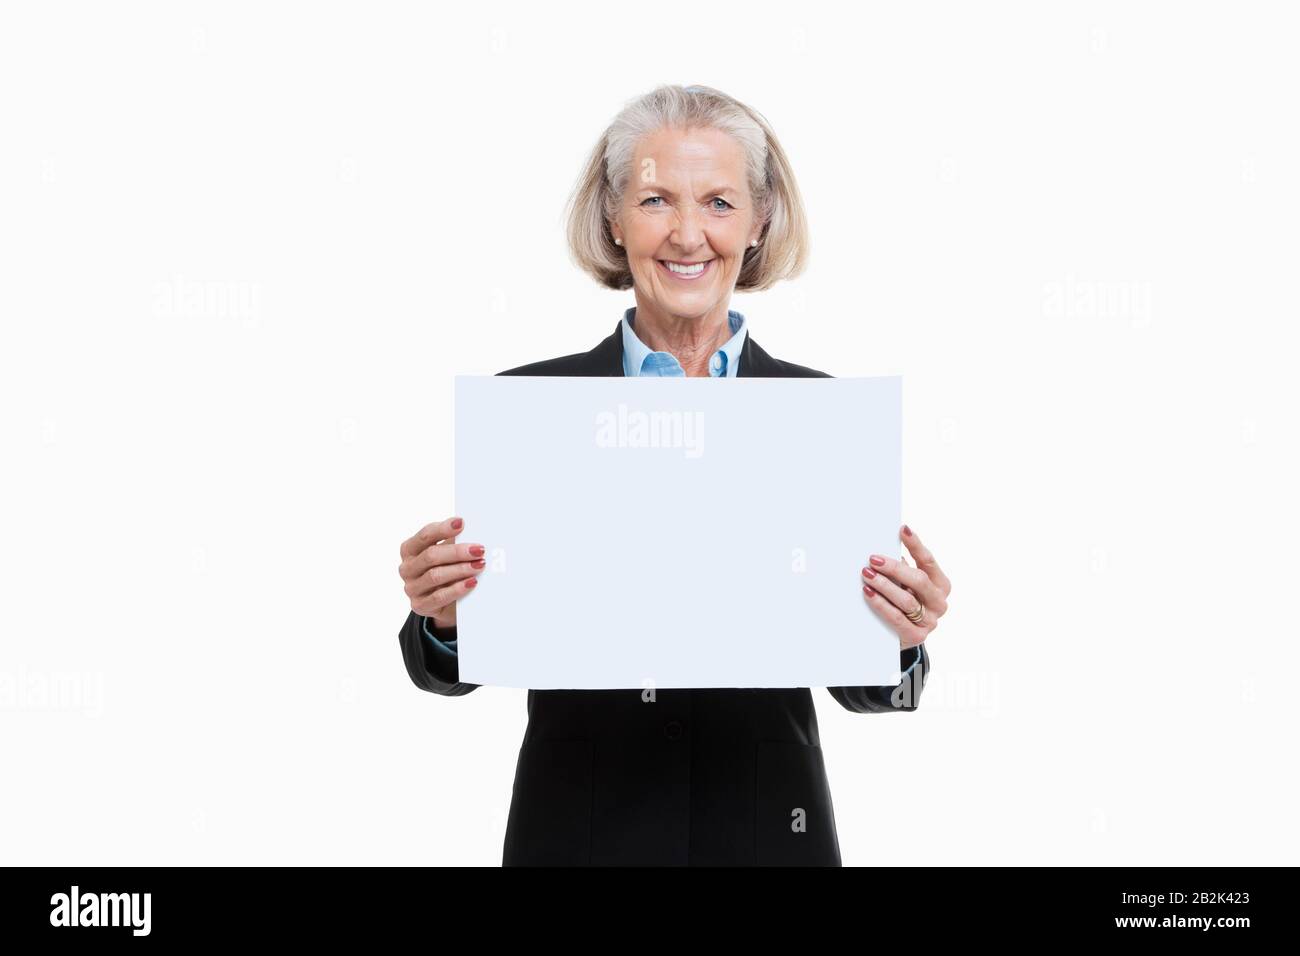 Ritratto di donna anziana che tiene una tavola bianca su sfondo bianco Foto Stock